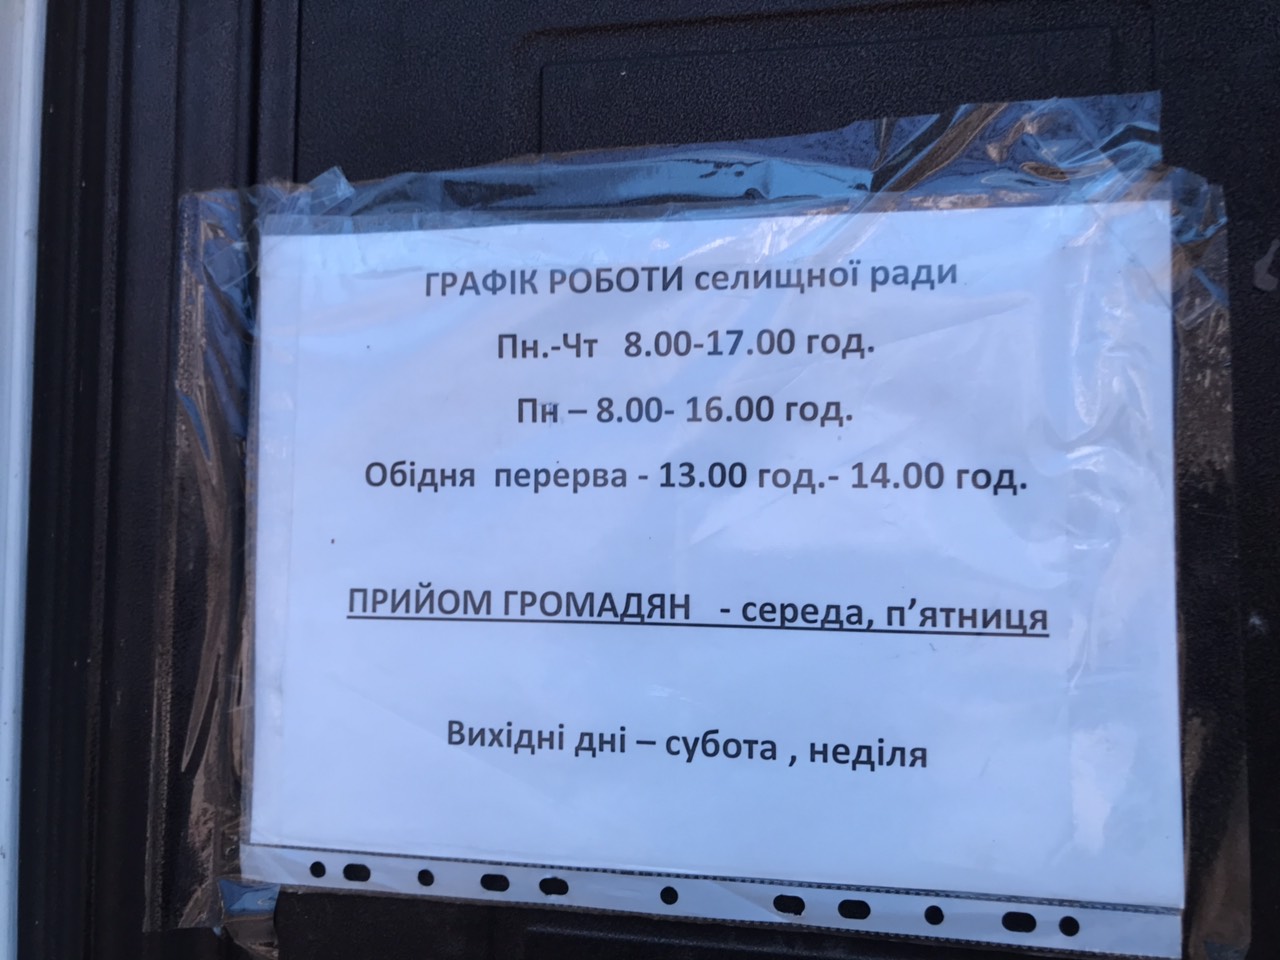 Очільники однієї з селищних рад Київщини відсутні на робочих місцях  